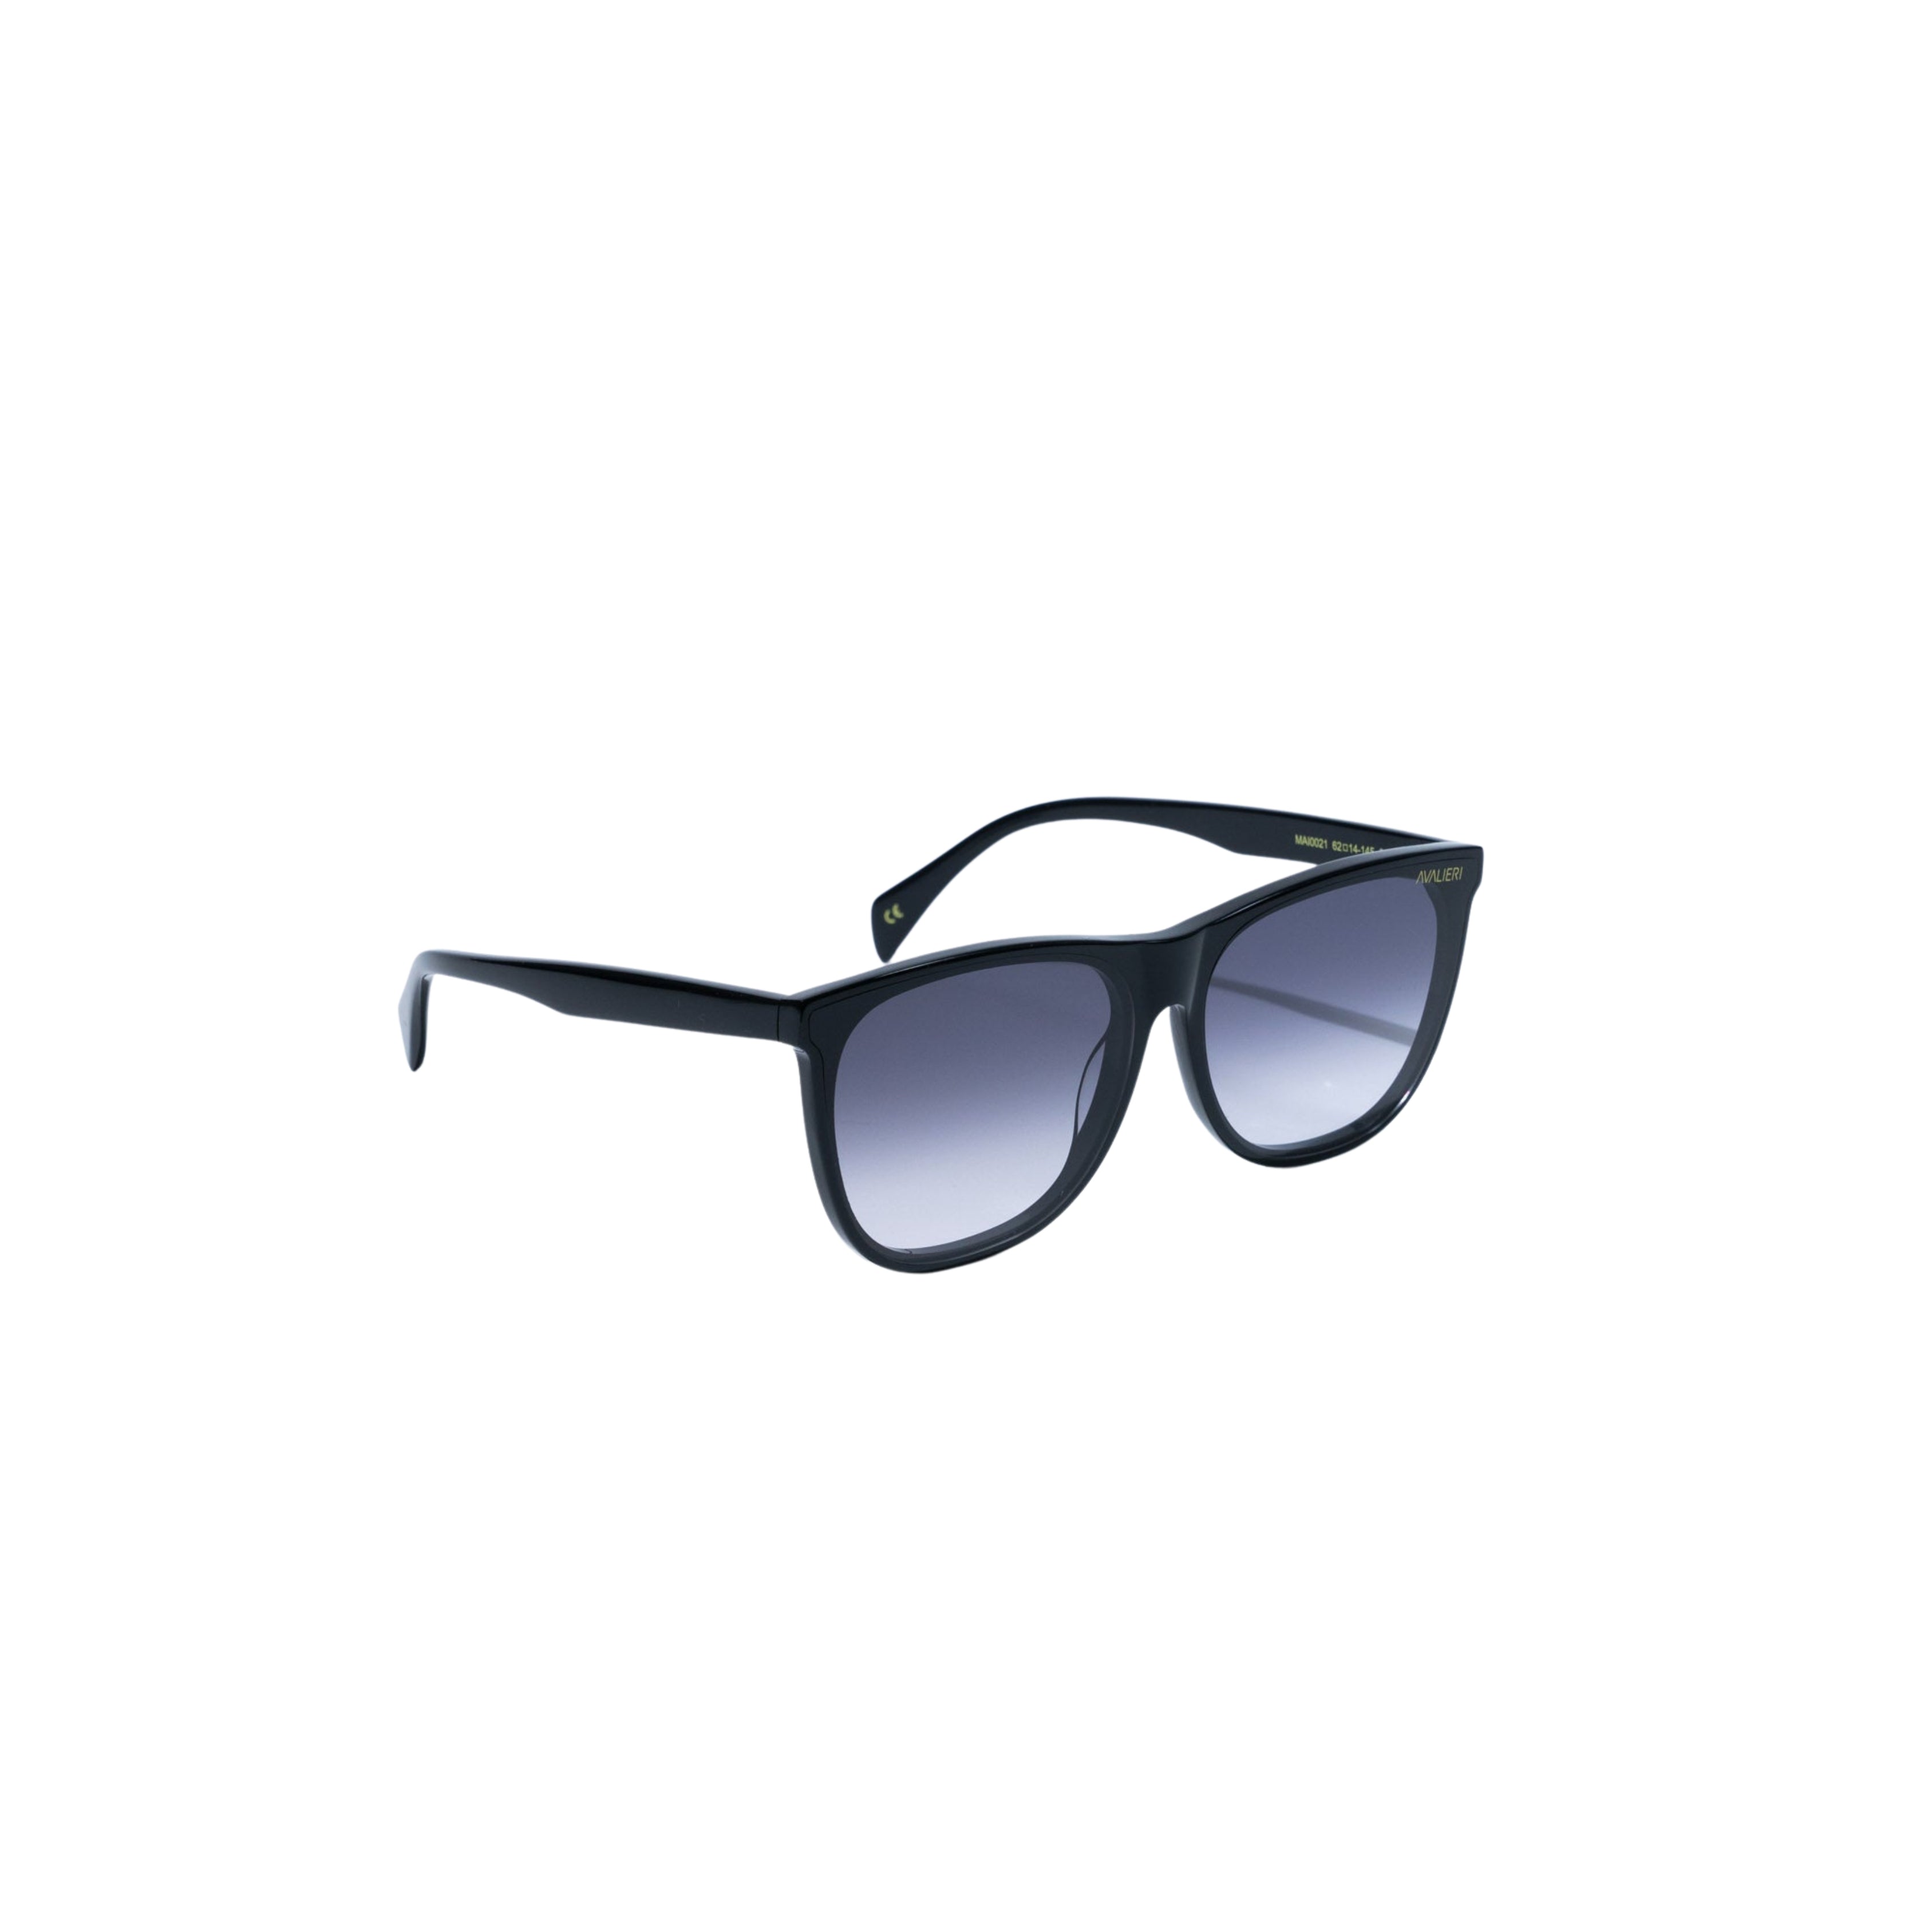 Avalieri Black Sunglasses for Men and Women - AVSG-0001